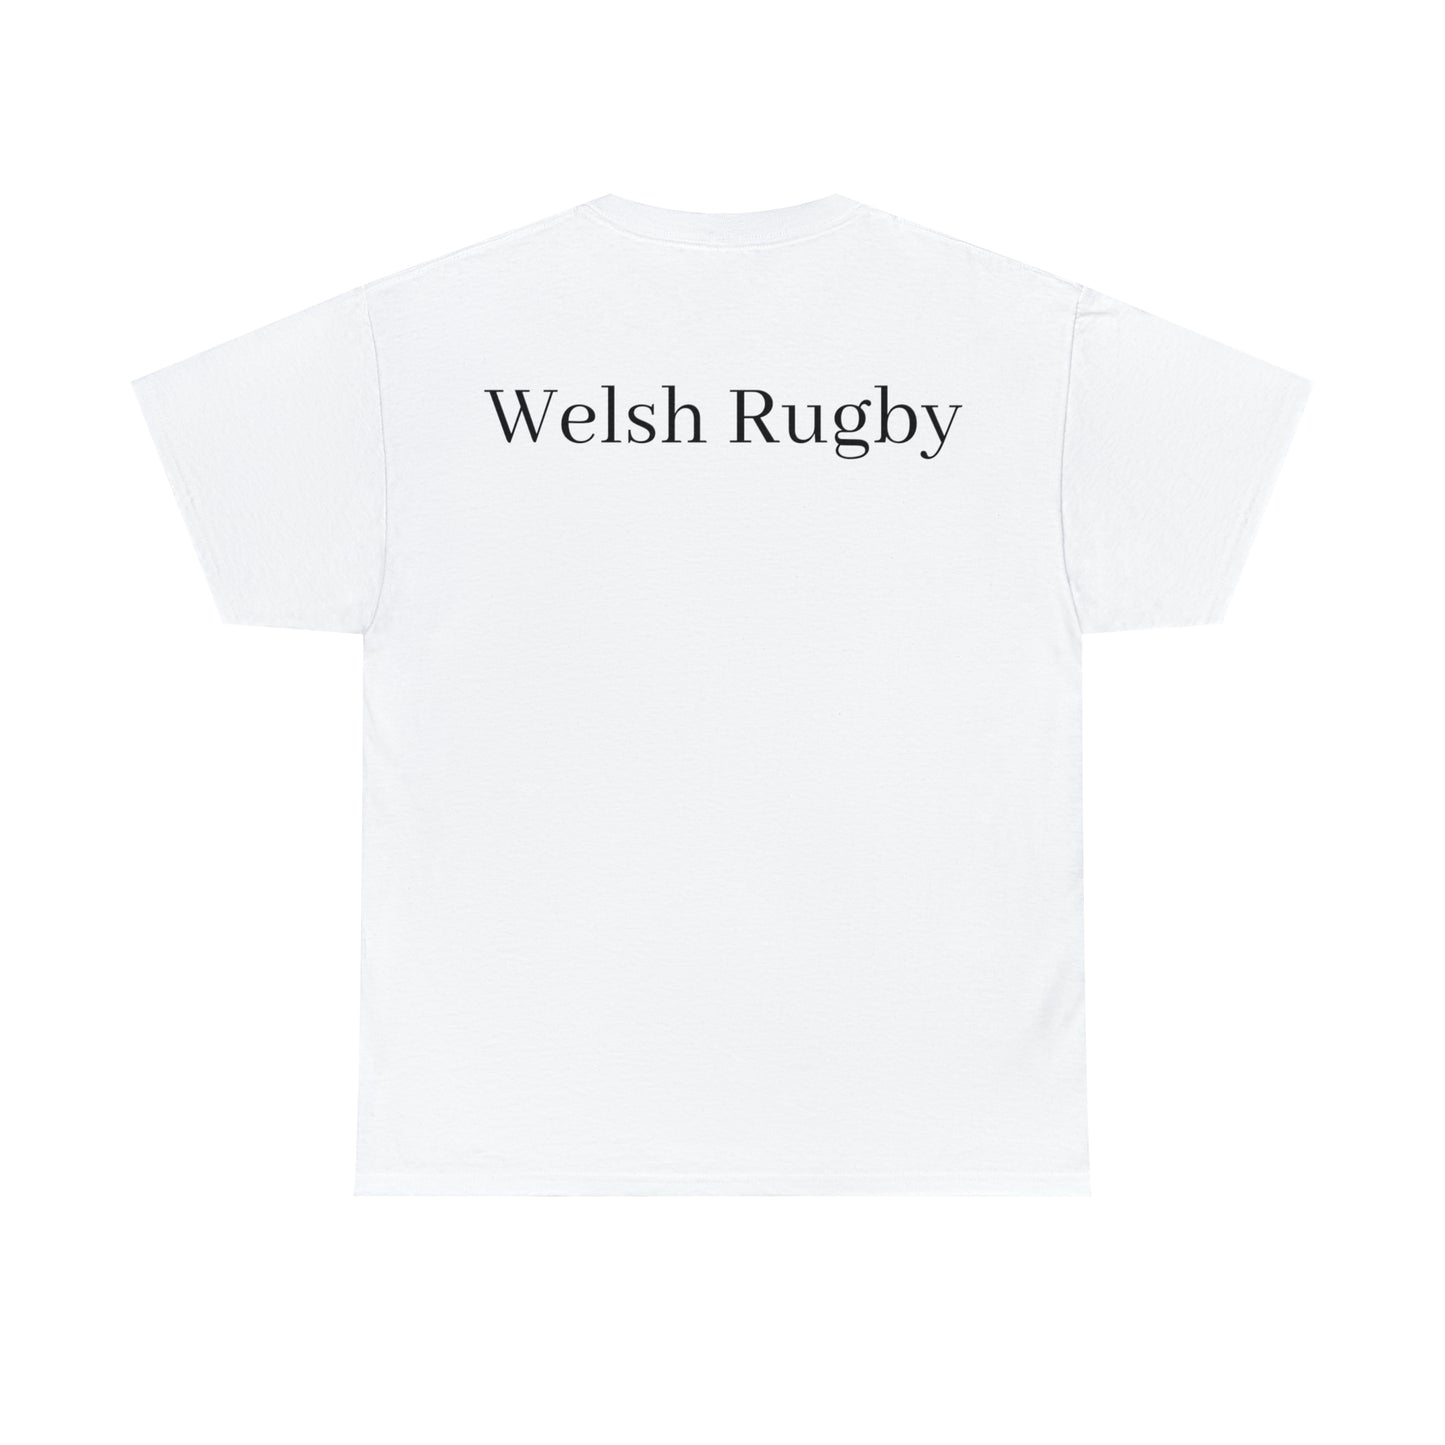 Post Match Wales - light shirts